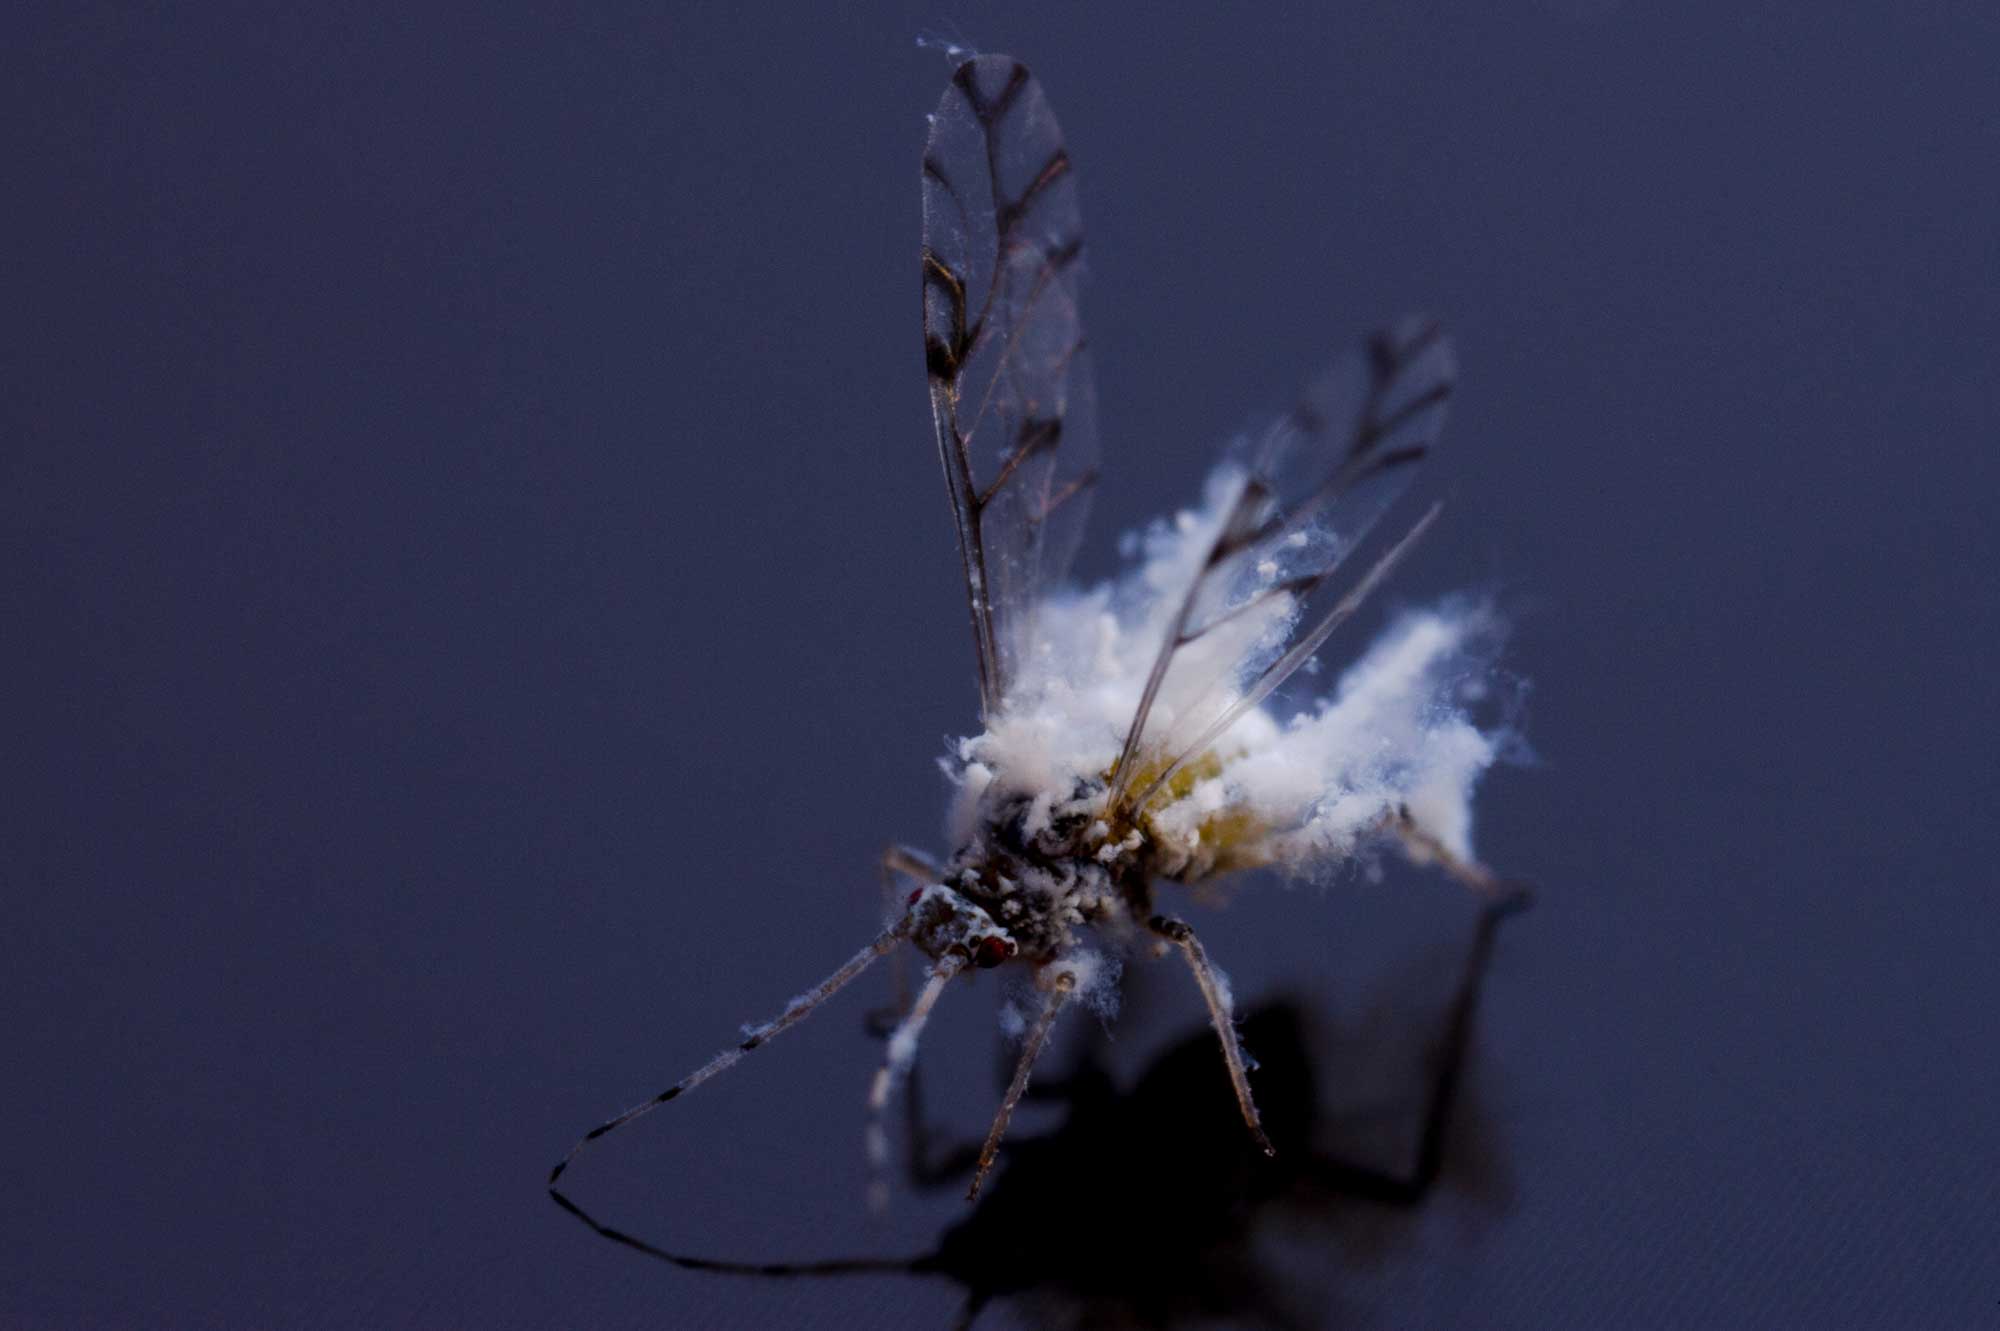 雪虫と呼ばれるふわふわの昆虫 エノキワタアブラムシを写真で紹介 虫の写真と生態なら昆虫写真図鑑 ムシミル